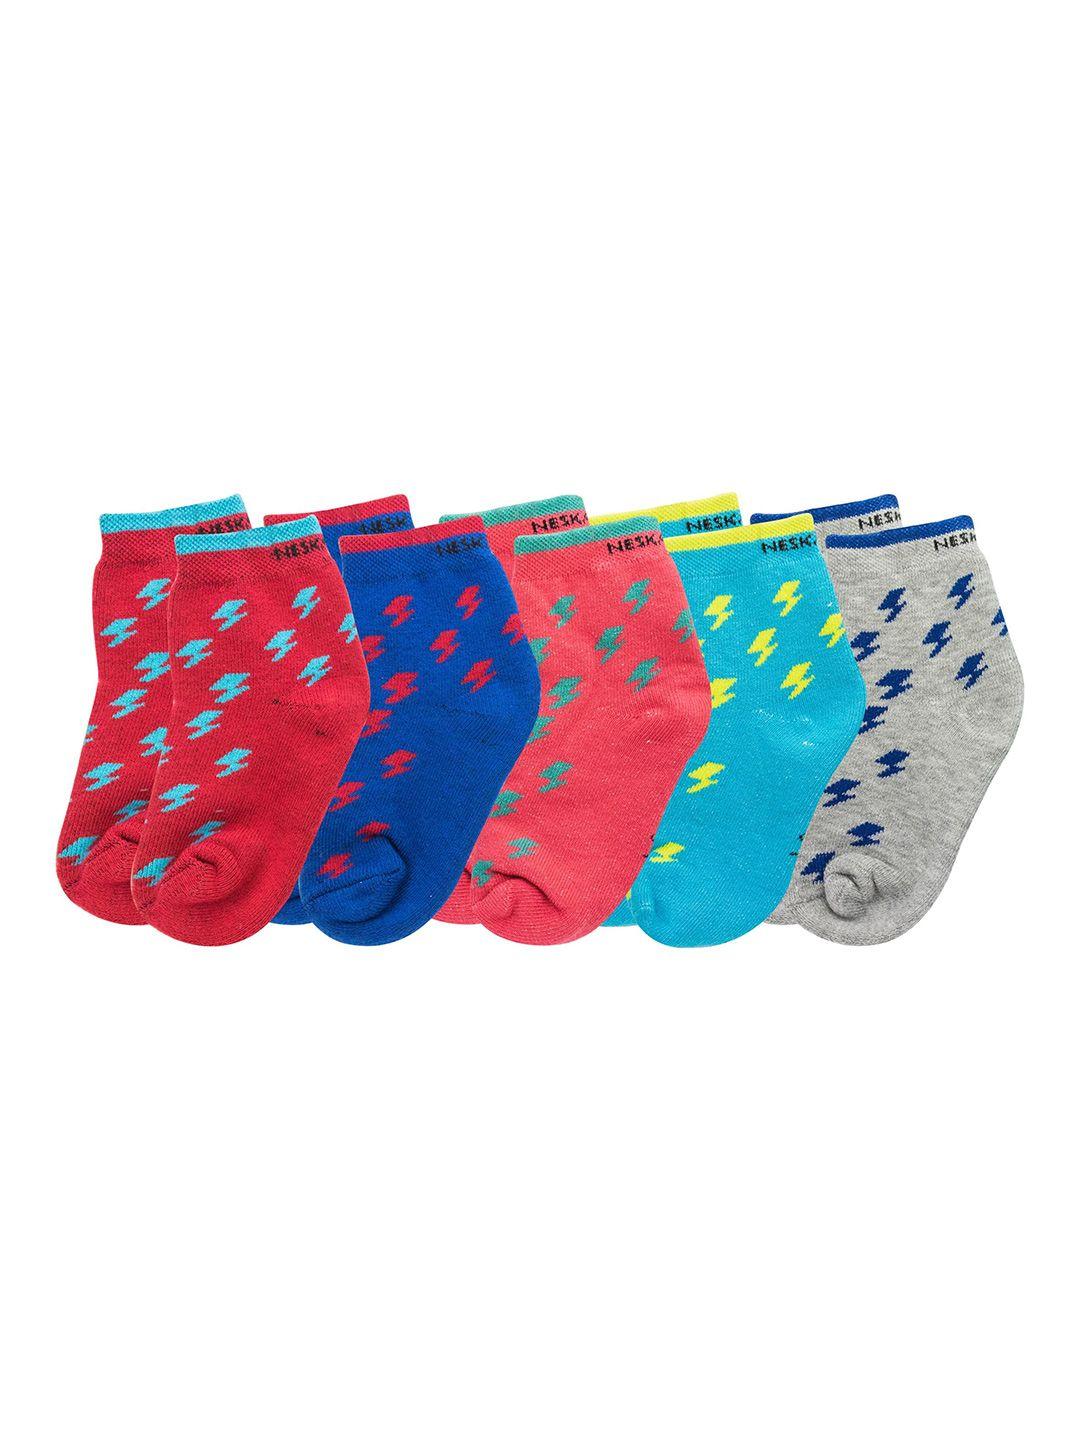 baesd kids pack of 5 patterned ankle length socks